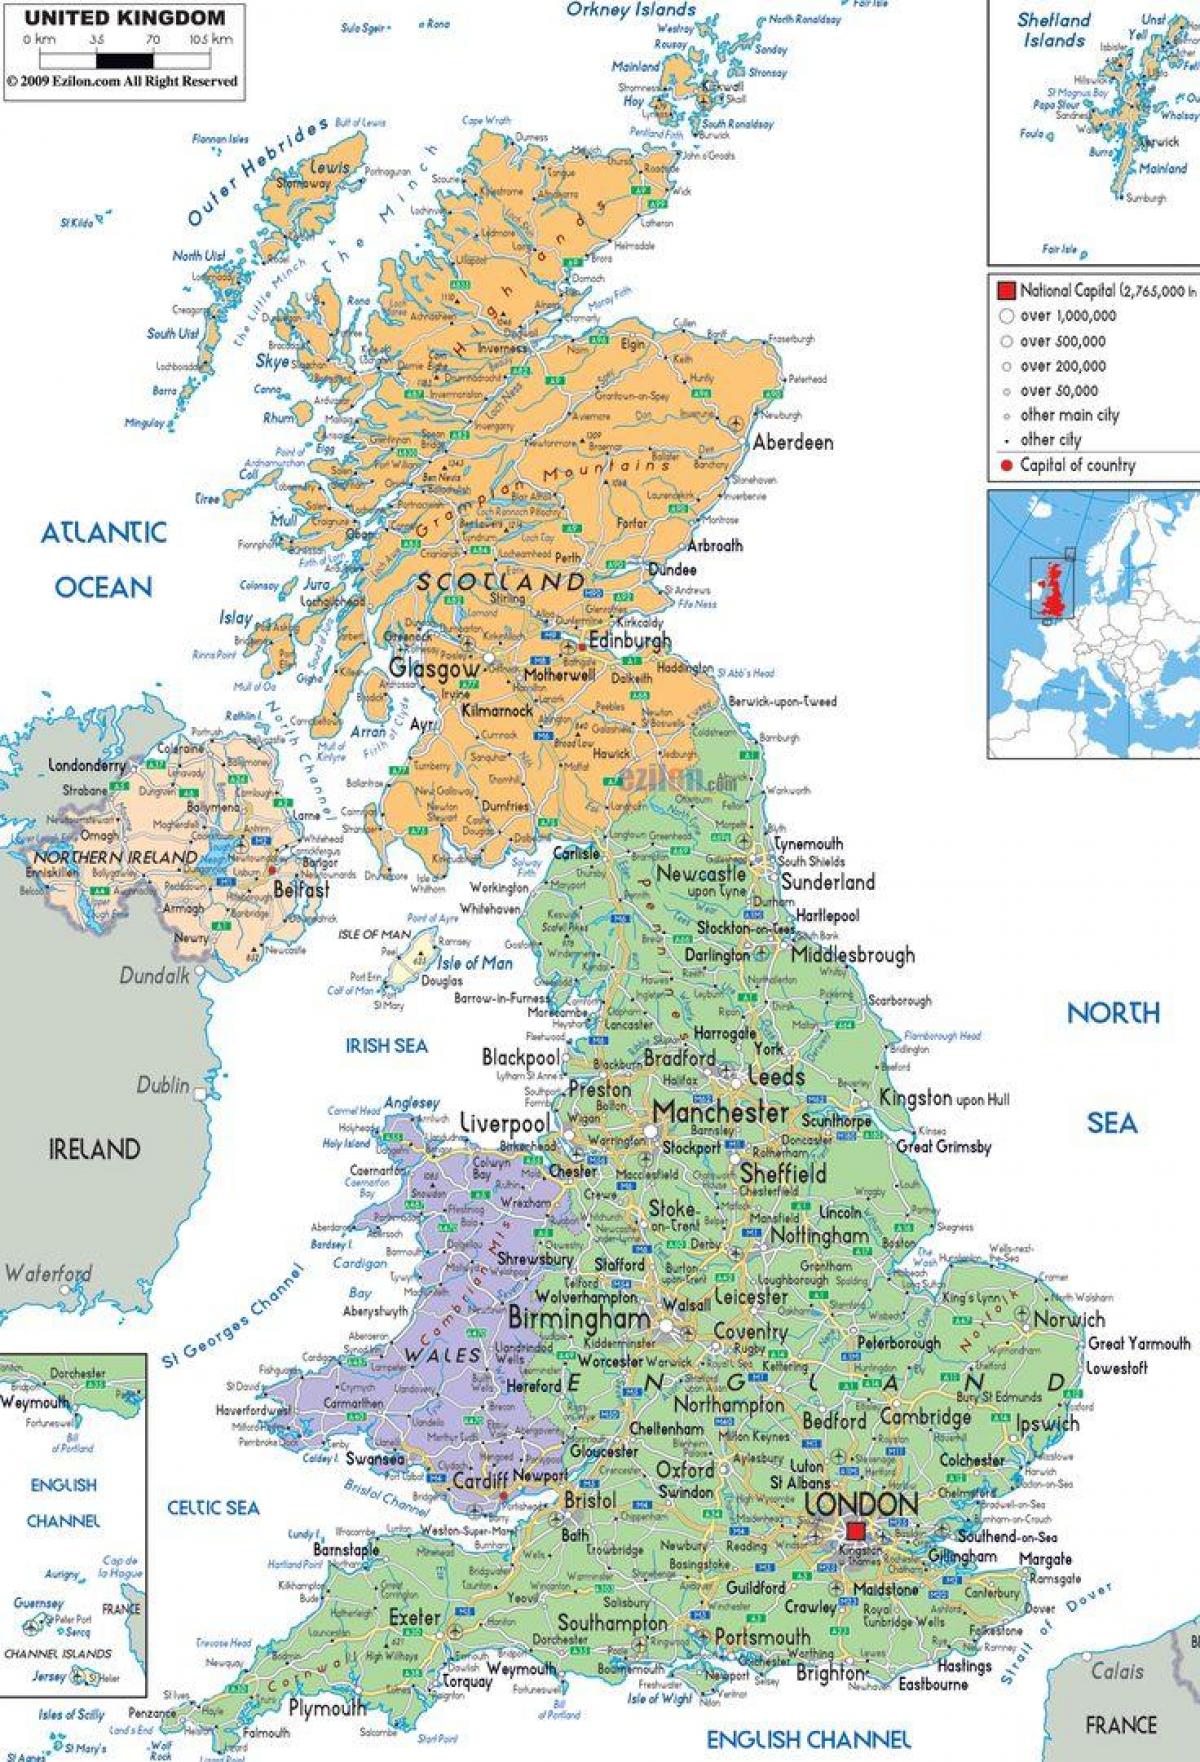 Karte von Universitäten in Großbritannien